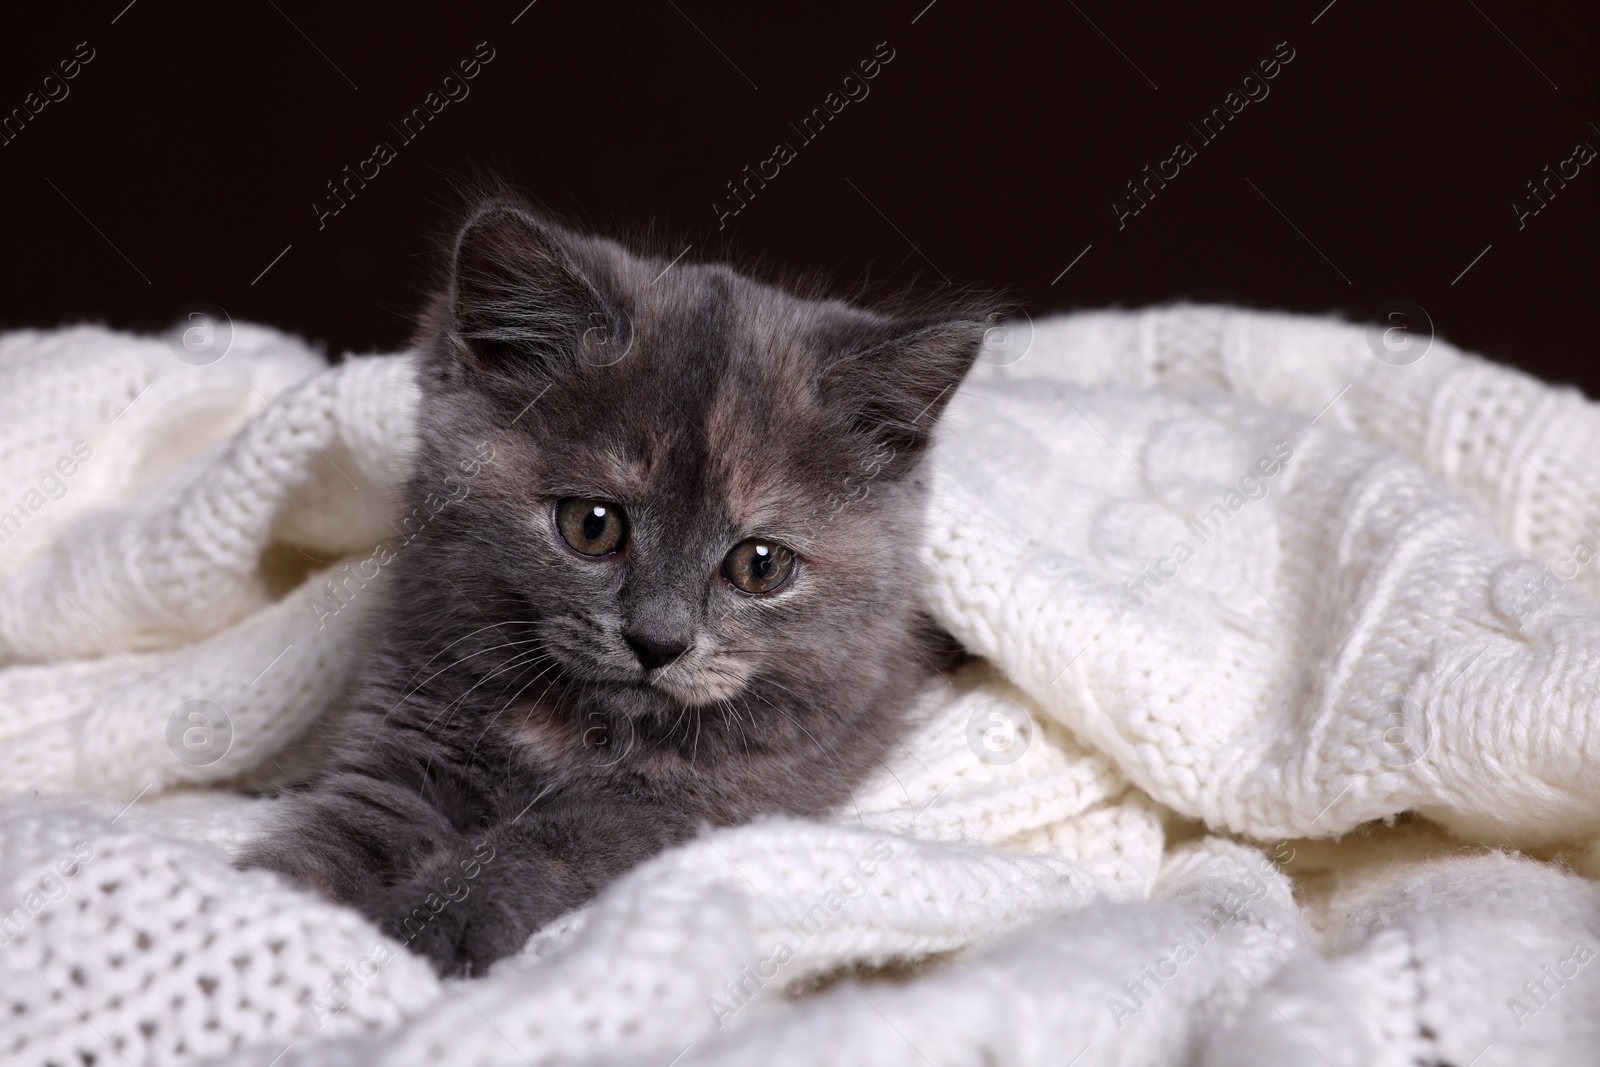 Photo of Cute fluffy kitten in white knitted blanket against dark background